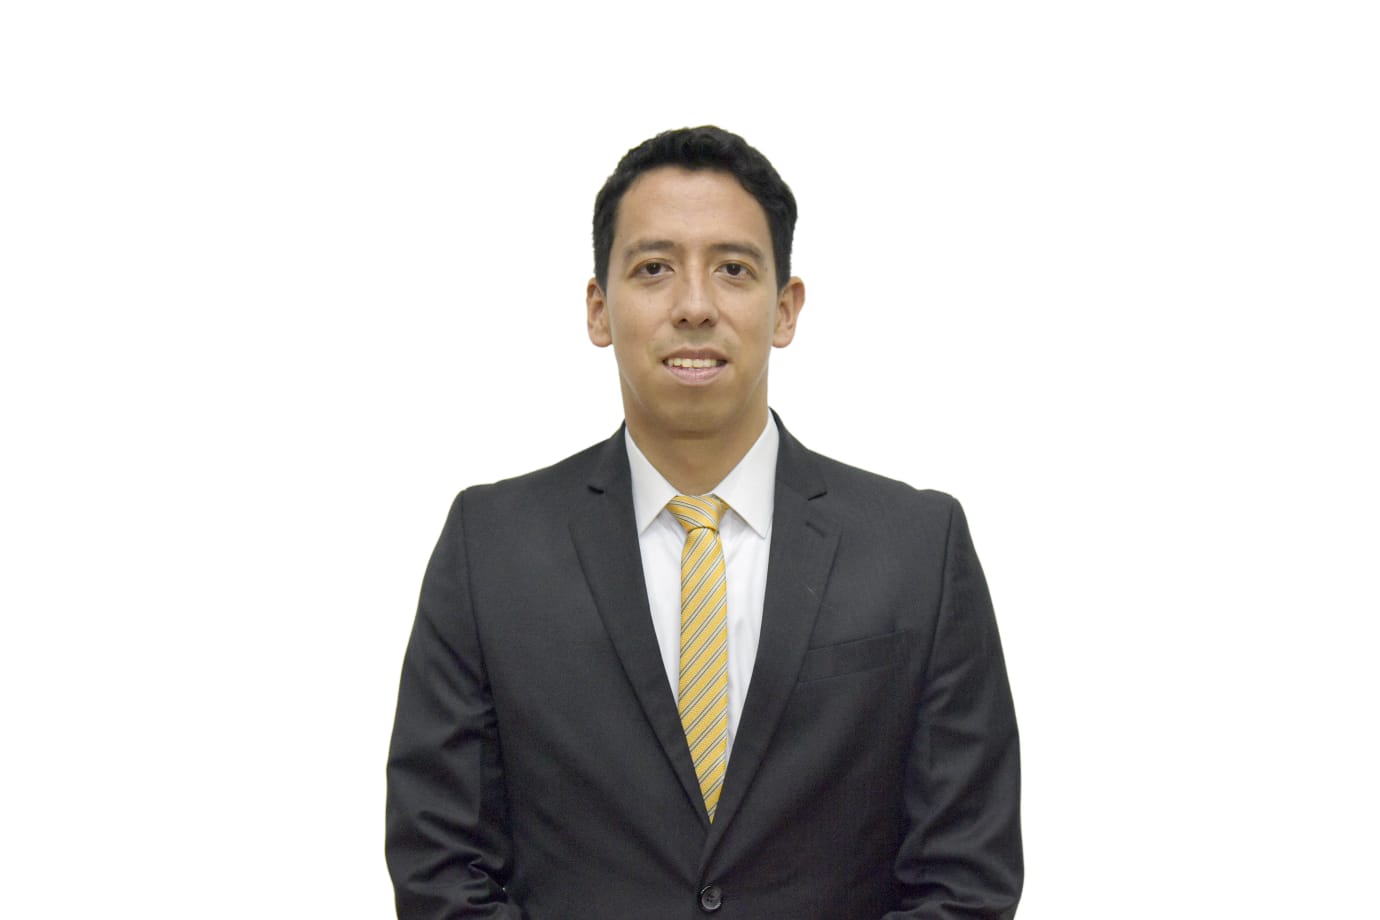 Daniel Eduardo Lozano Bocanegra